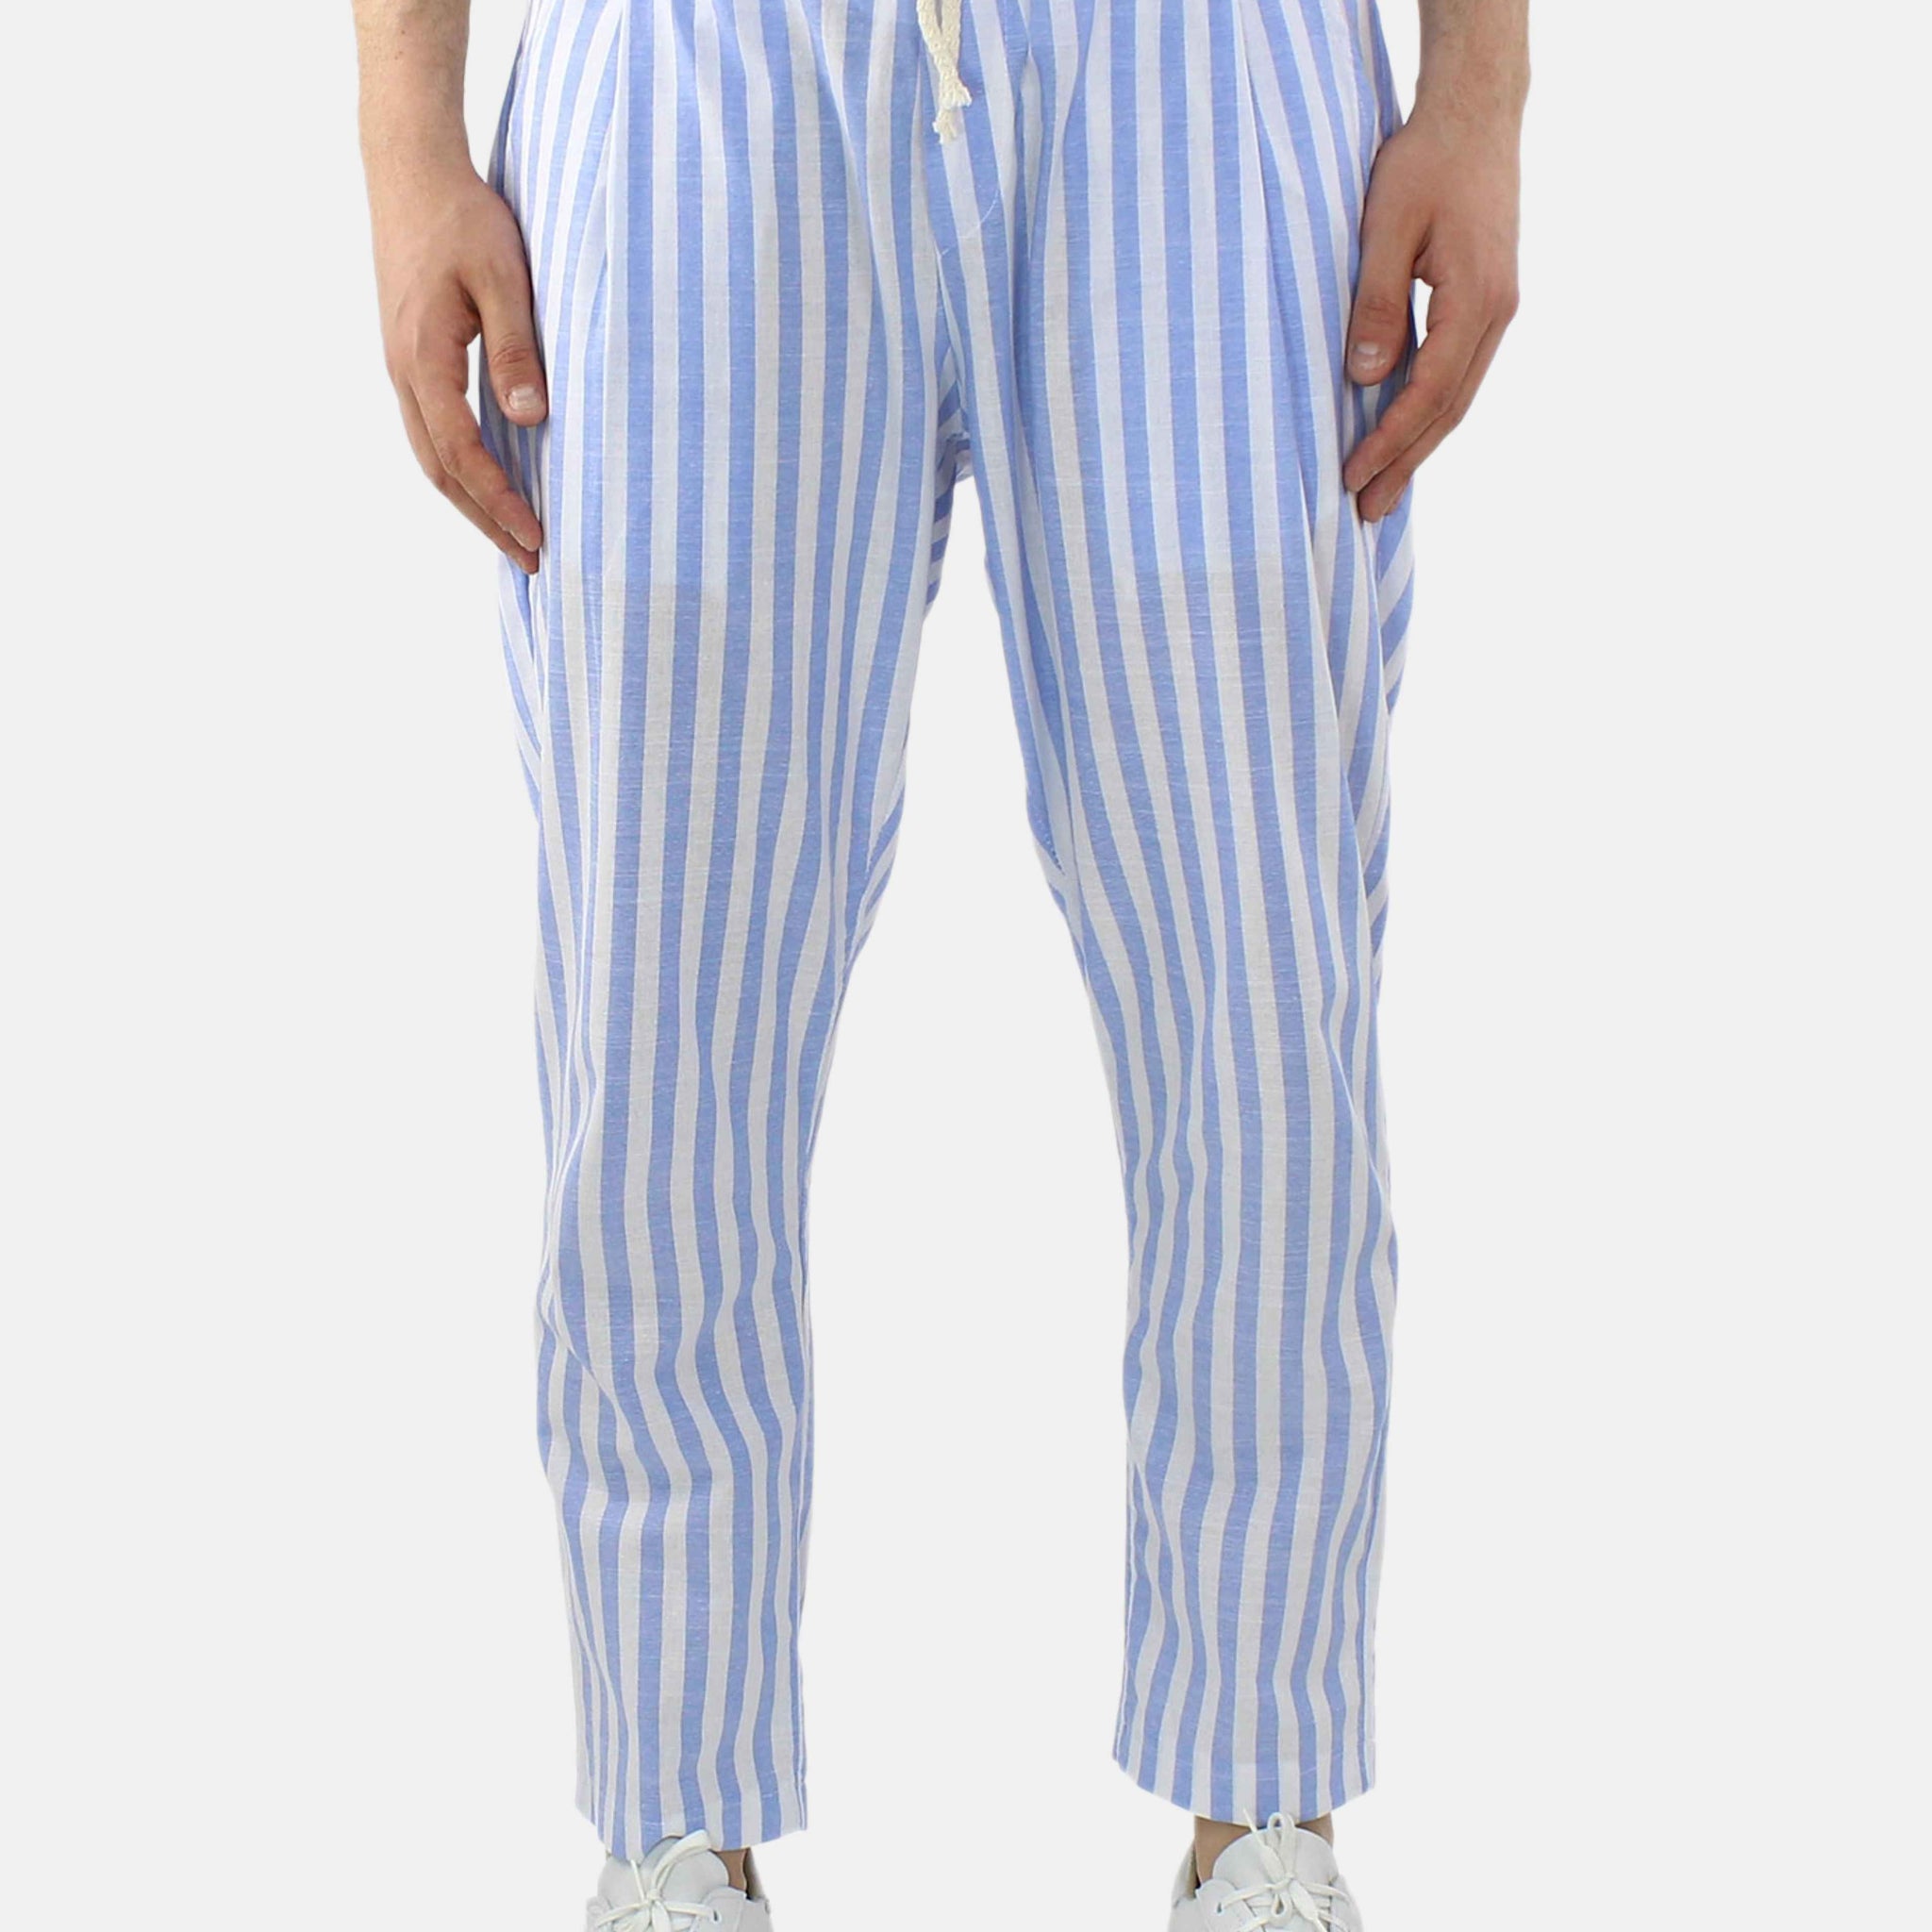 Pantalone in lino con righe medie